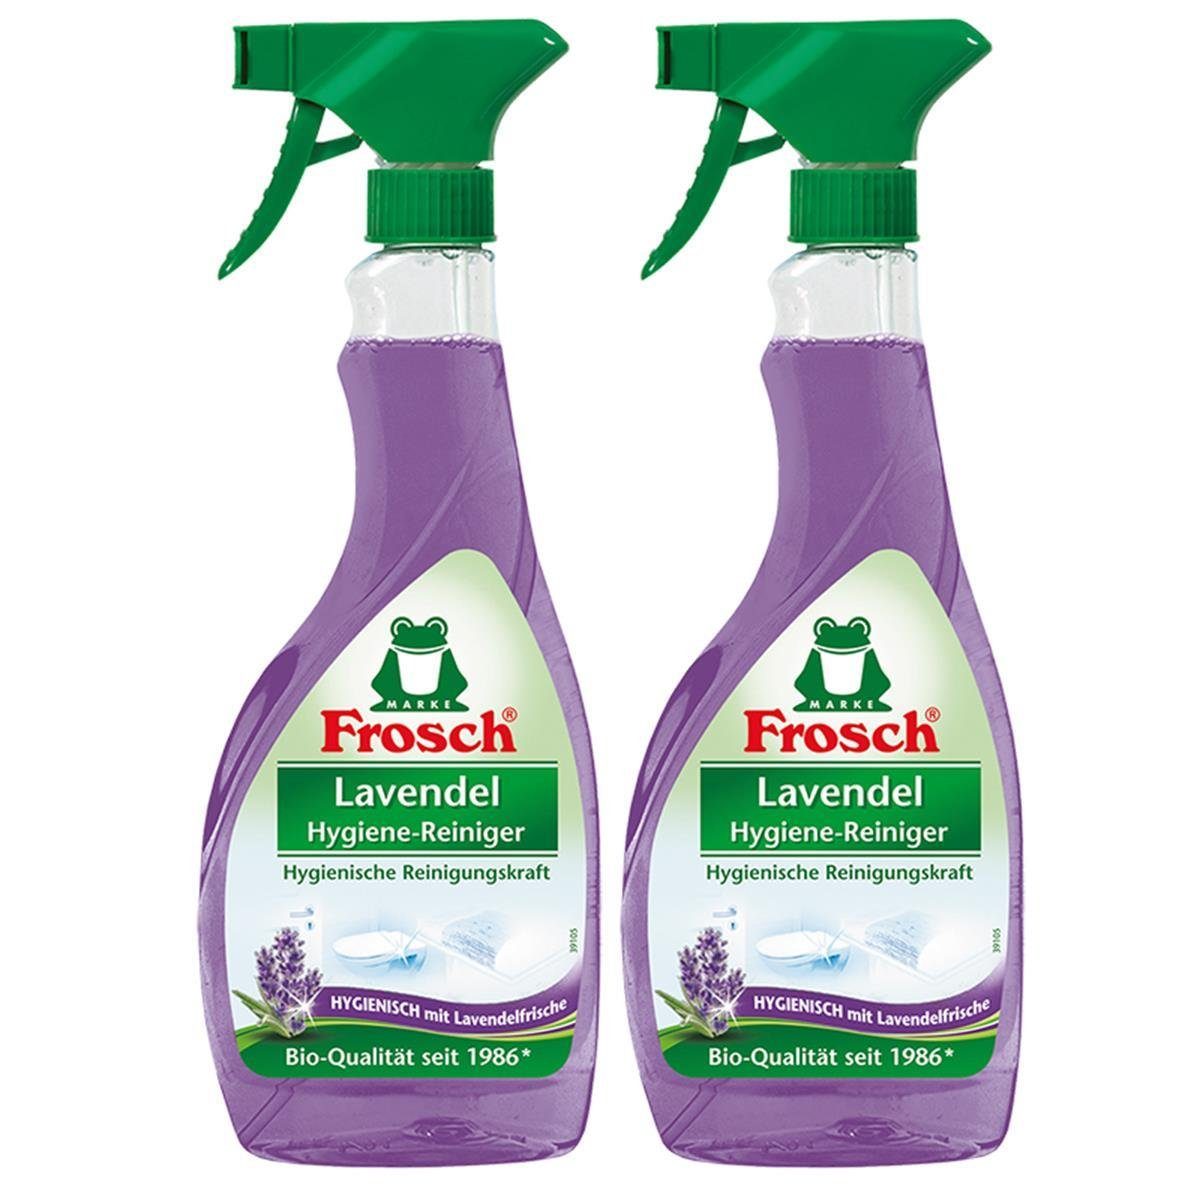 FROSCH 2x Frosch Lavendel Hygiene-Reiniger 500 ml Sprühflasche Spezialwaschmittel